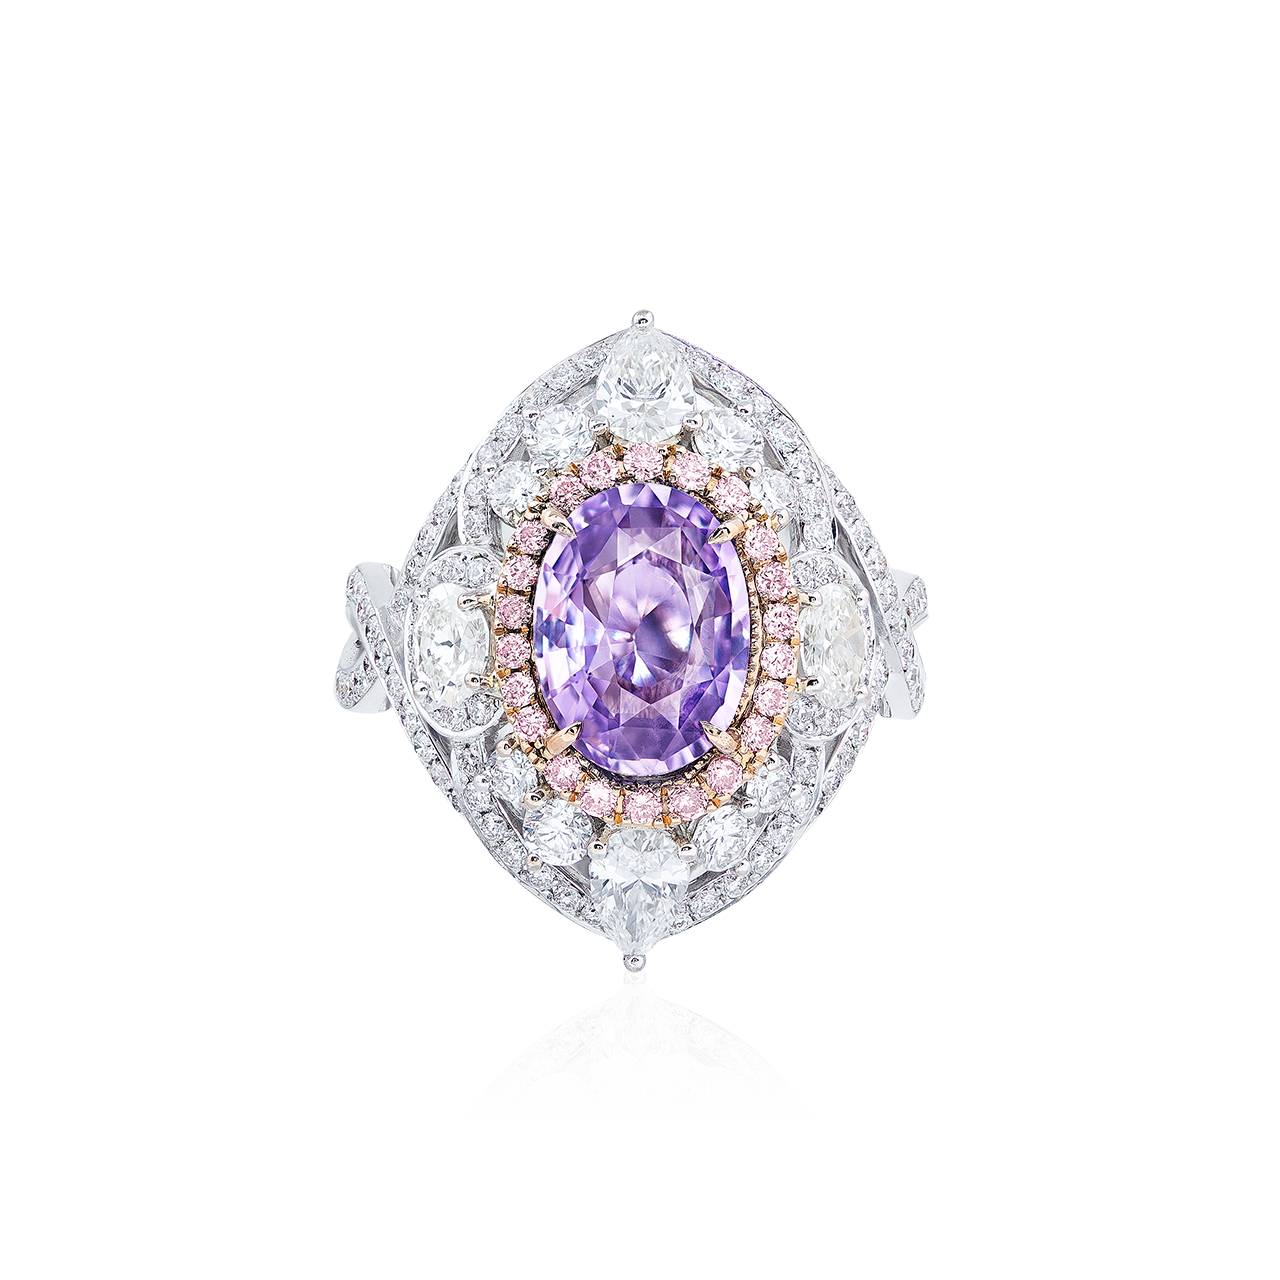 2.52克拉 紫剛鑽戒
Purple Corundum and Diamond Ring